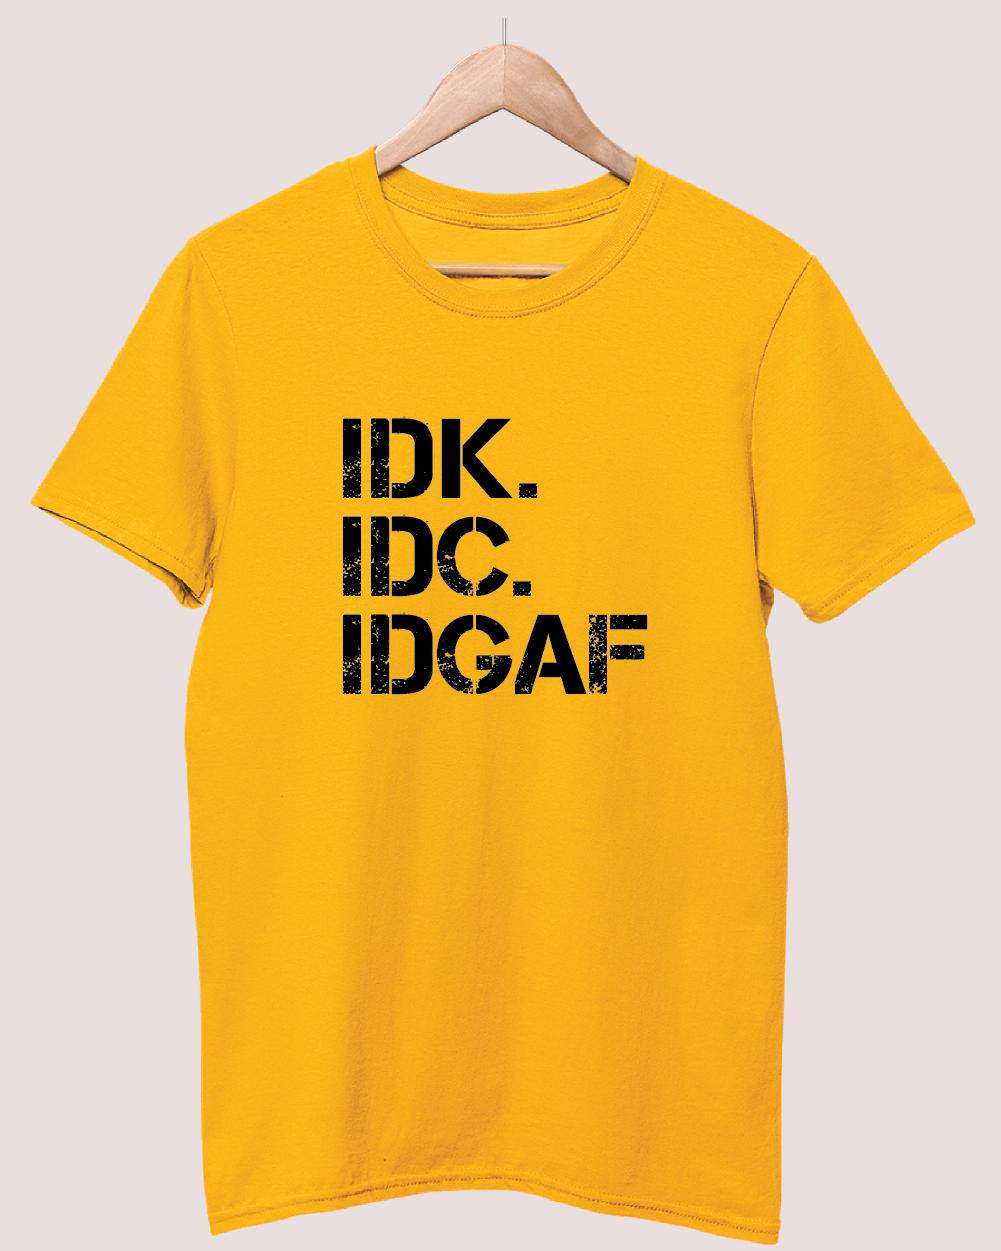 IDK IDC IDGAF t-shirt